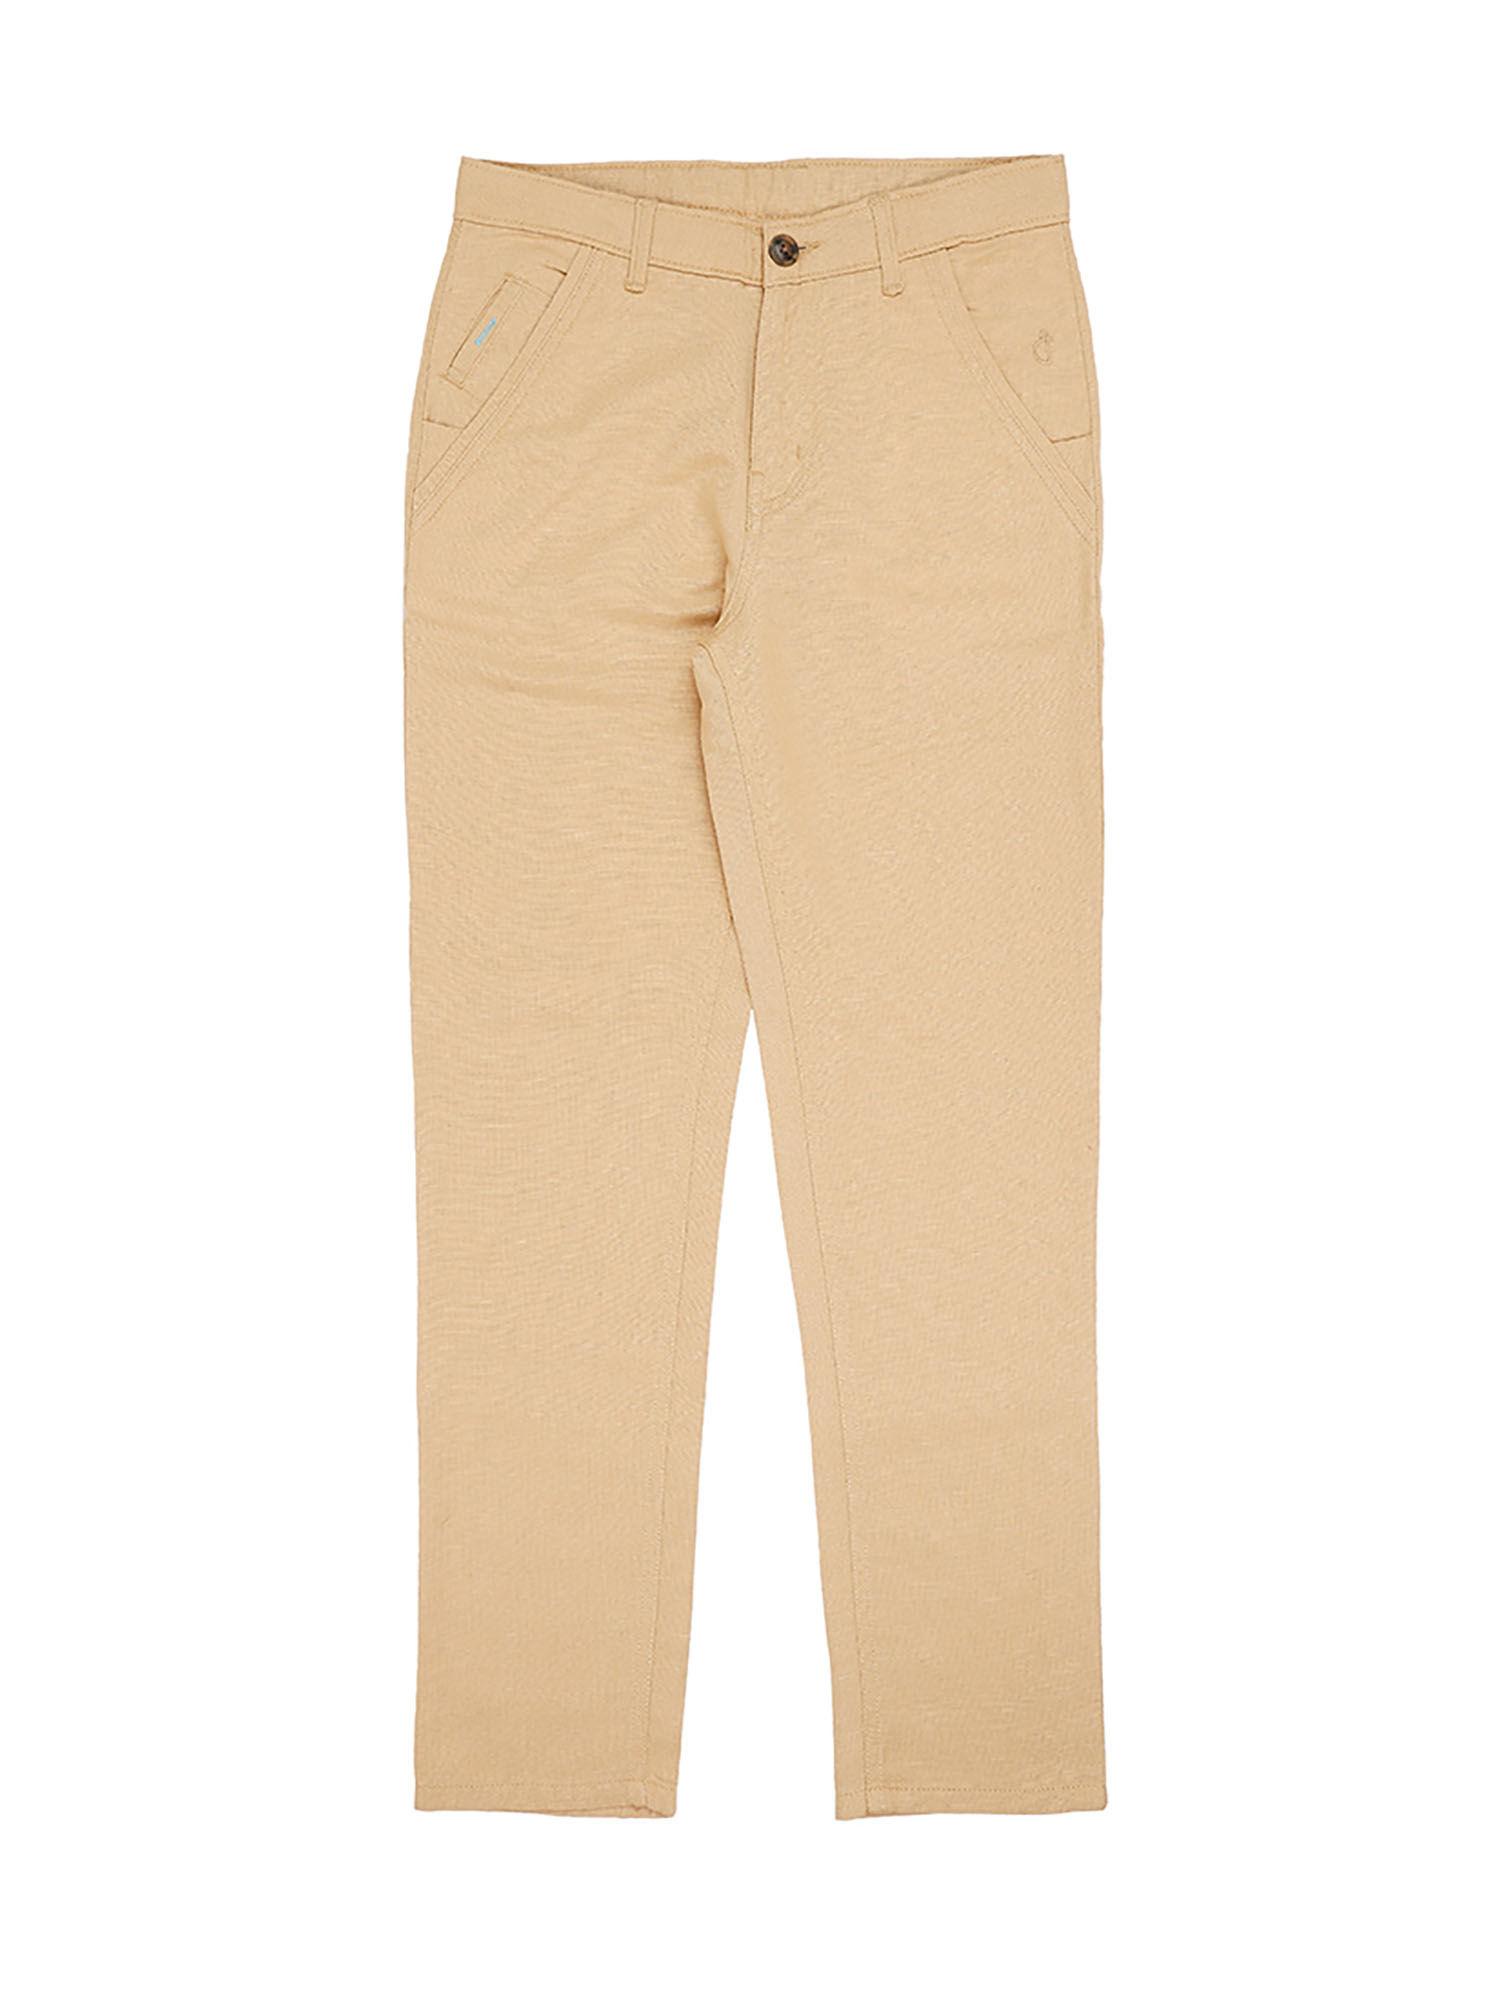 peach color solid plain trouser